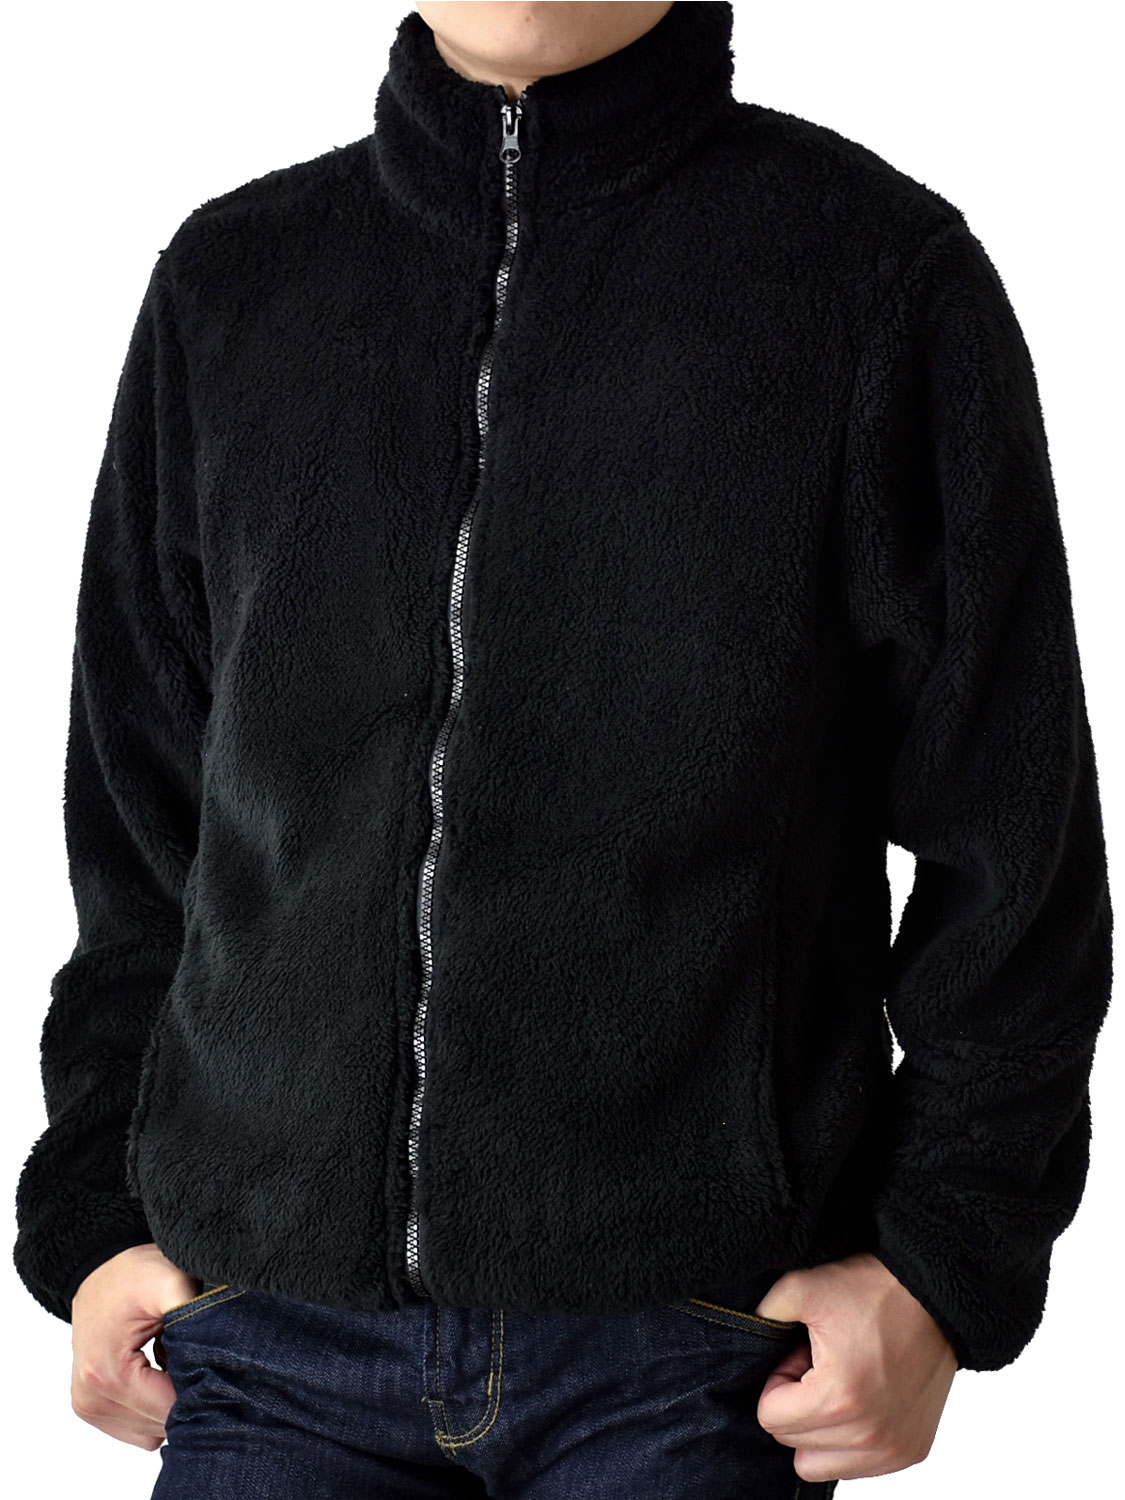 フリースジャケット メンズ ボアフリース 暖か スタンドカラー 起毛 裏起毛 送料無料 通販 防寒